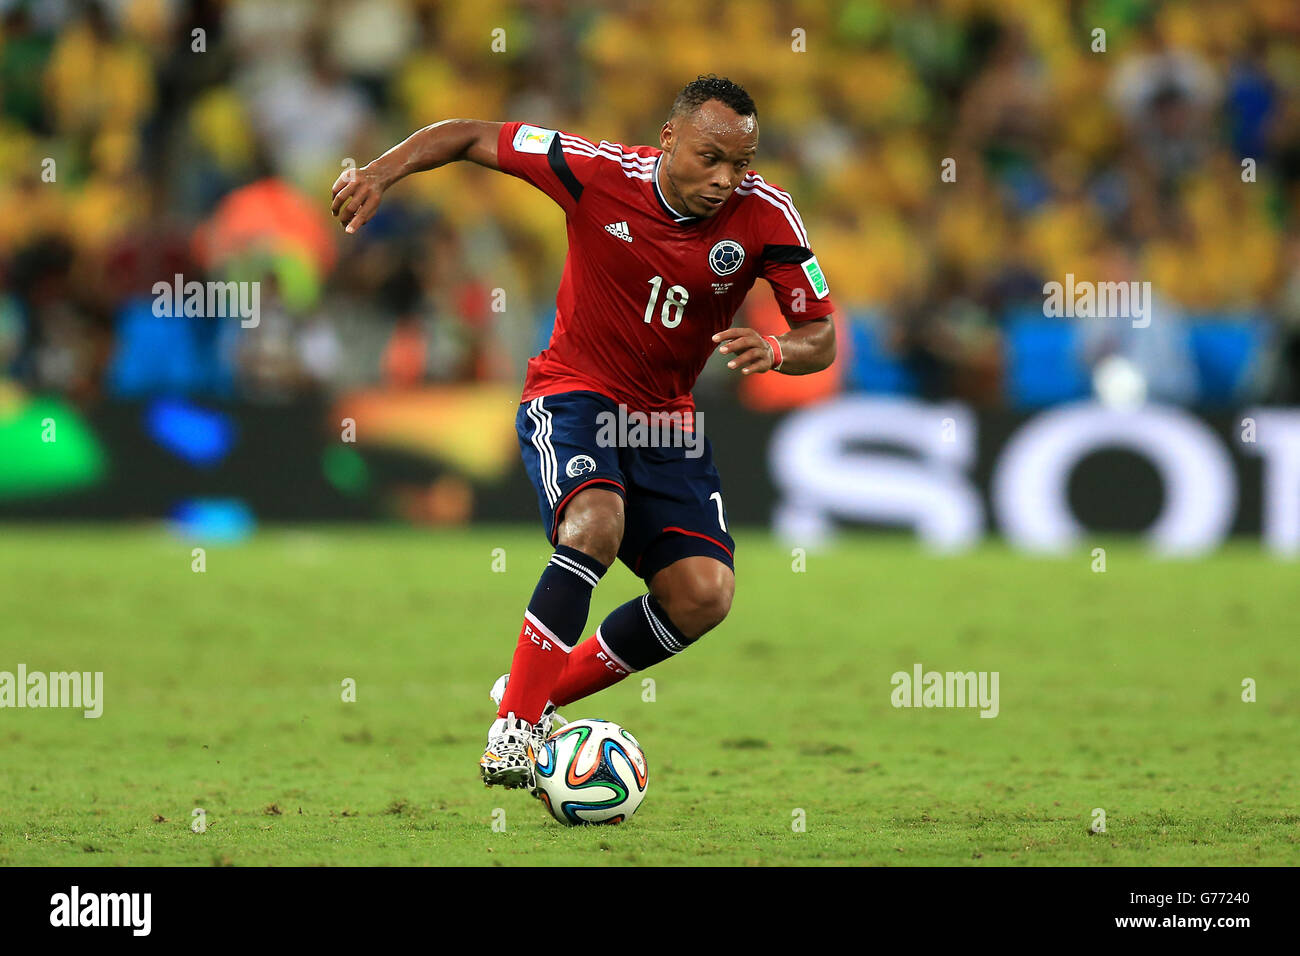 Soccer - FIFA World Cup 2014 - Quarter Final - Brazil v Colombia - Estadio Castelao. Colombia's Juan Camilo Zuniga Stock Photo